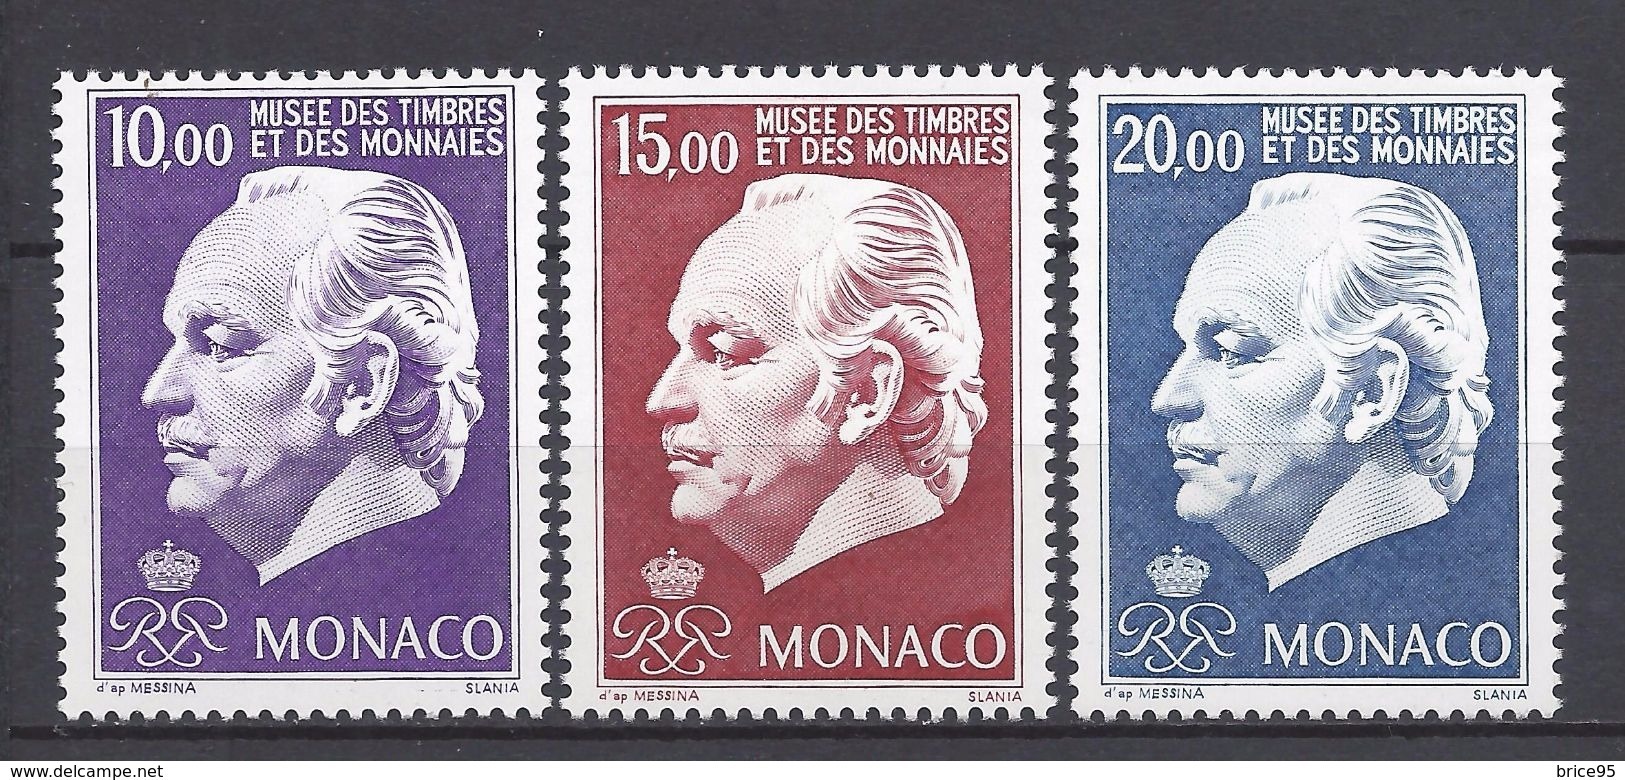 Monaco - YT N° 2033 à 2035 - Neuf Sans Charnière - 1996 - Ungebraucht